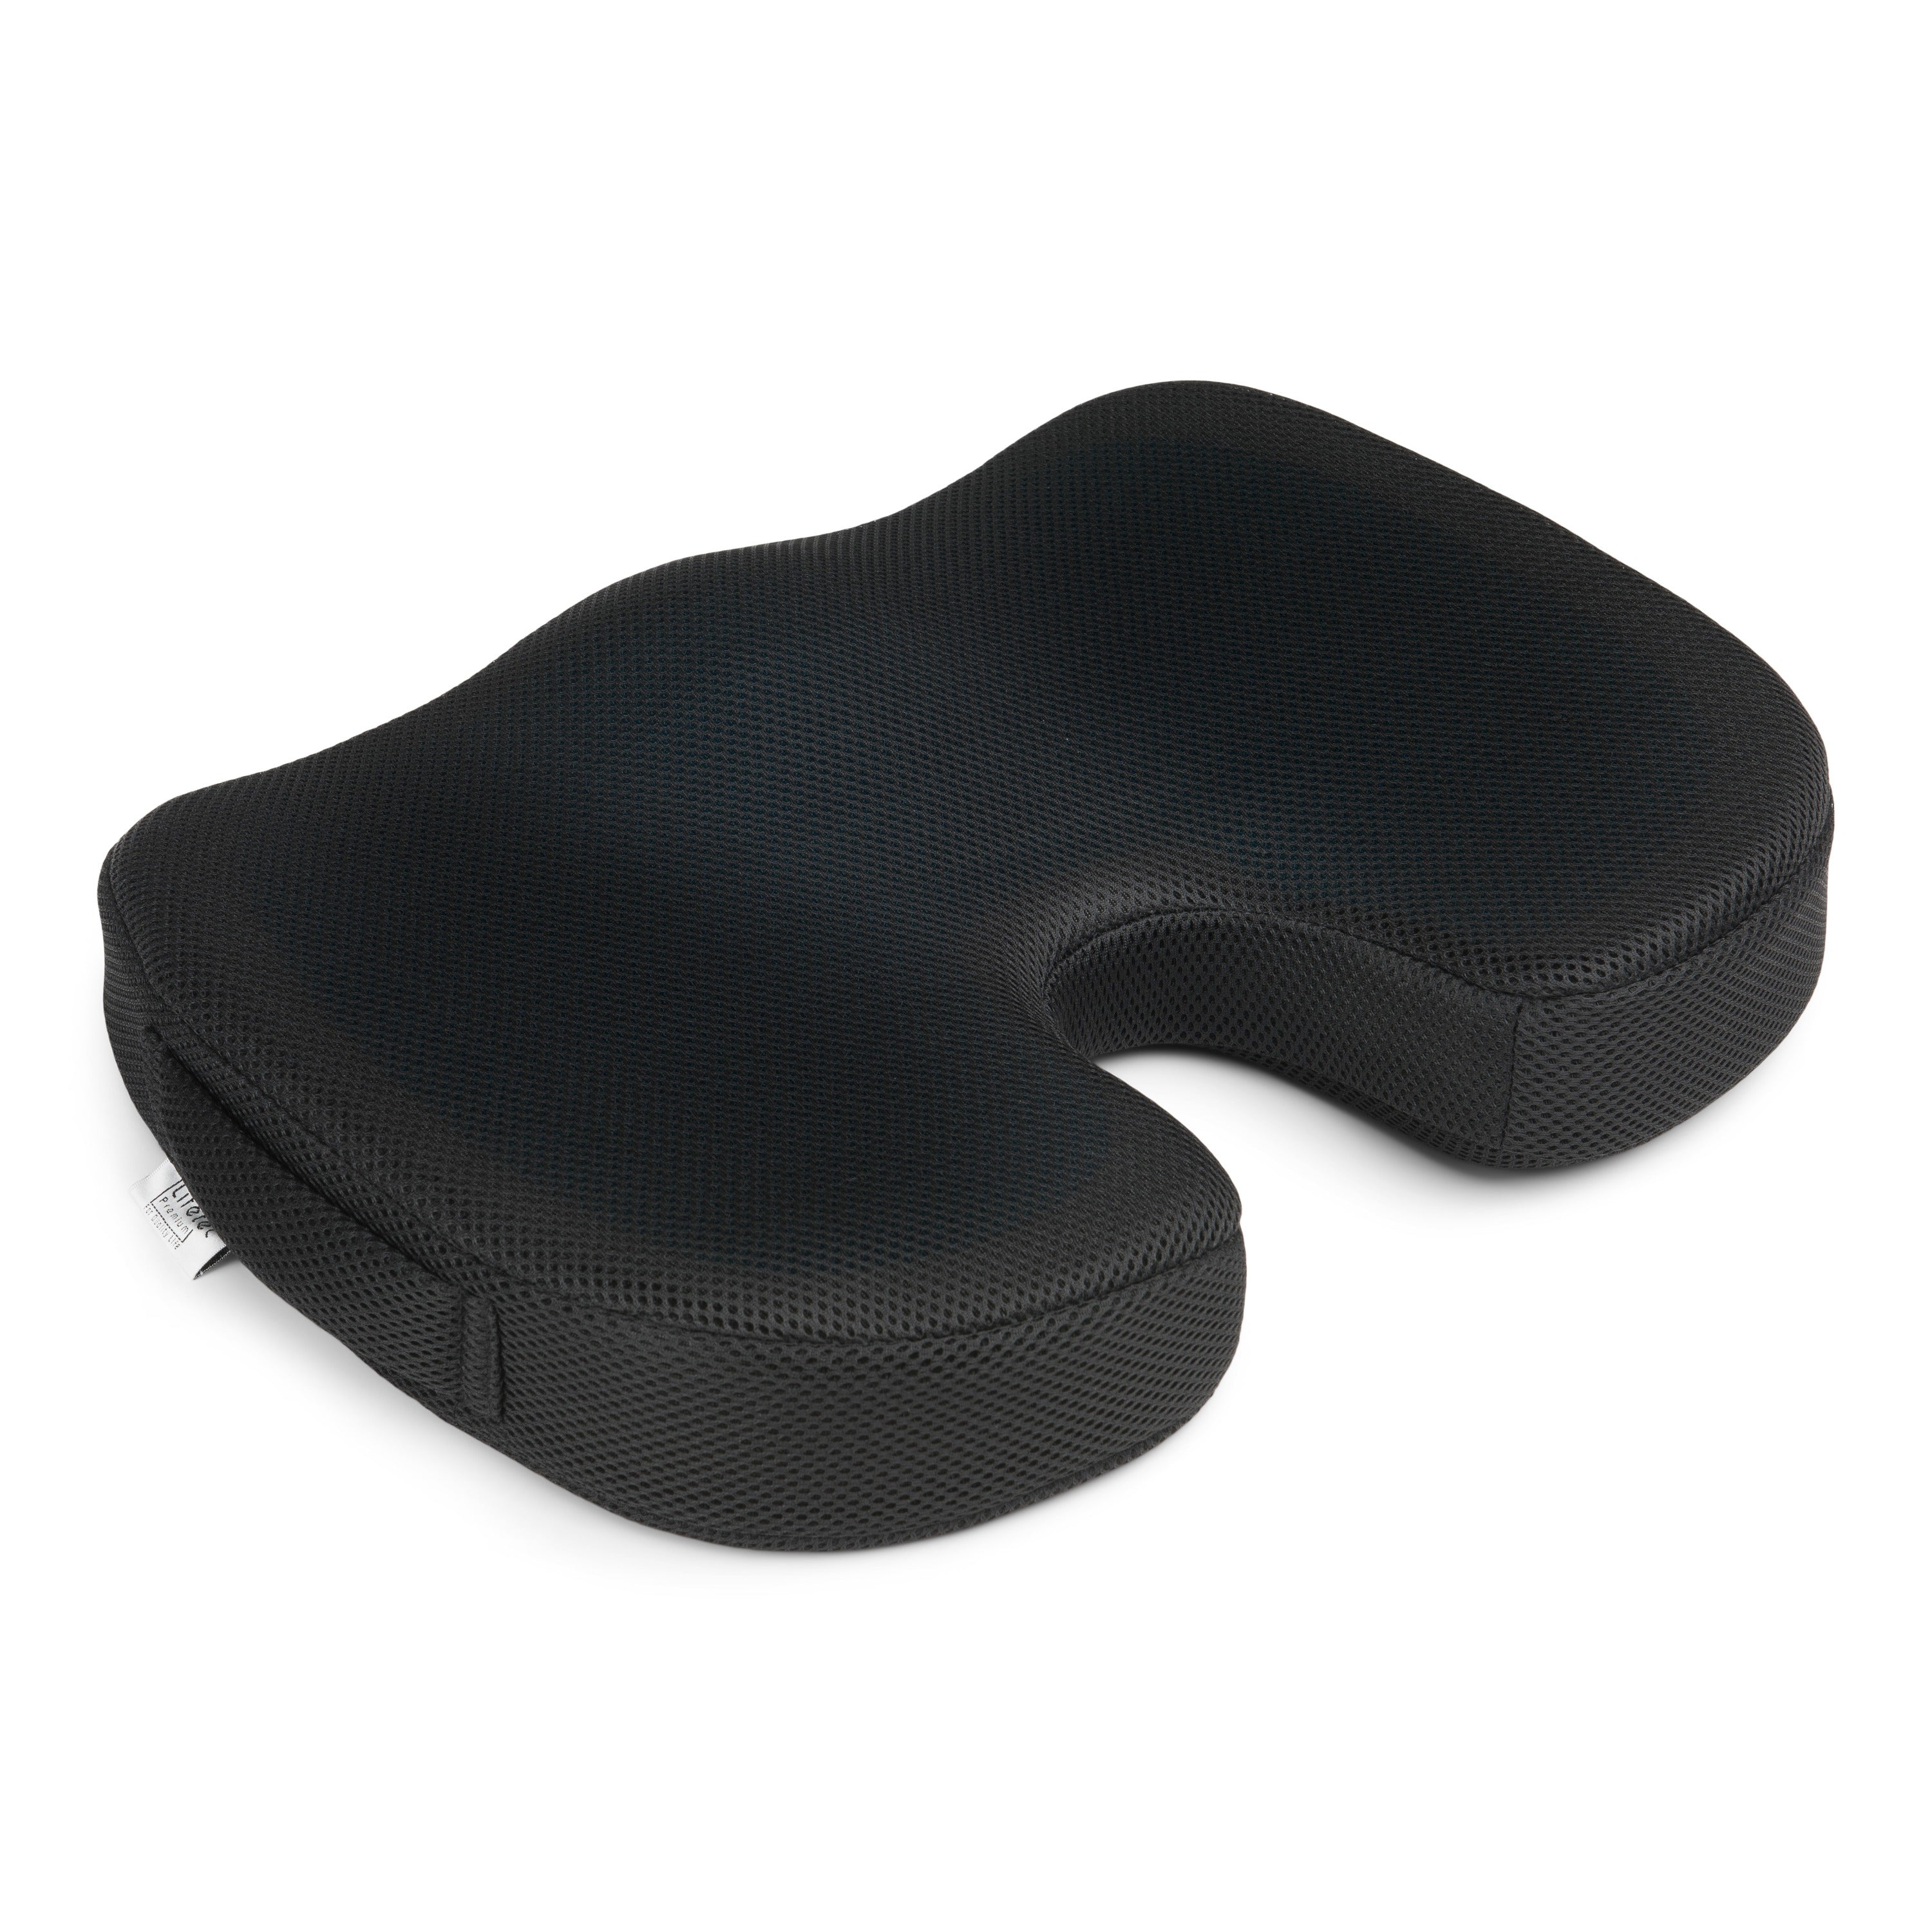 Veraangenamen Attent map Pro Cool Seat™ - Orthopedisch Traagschuim Stuitkussen – Lifetec Premium